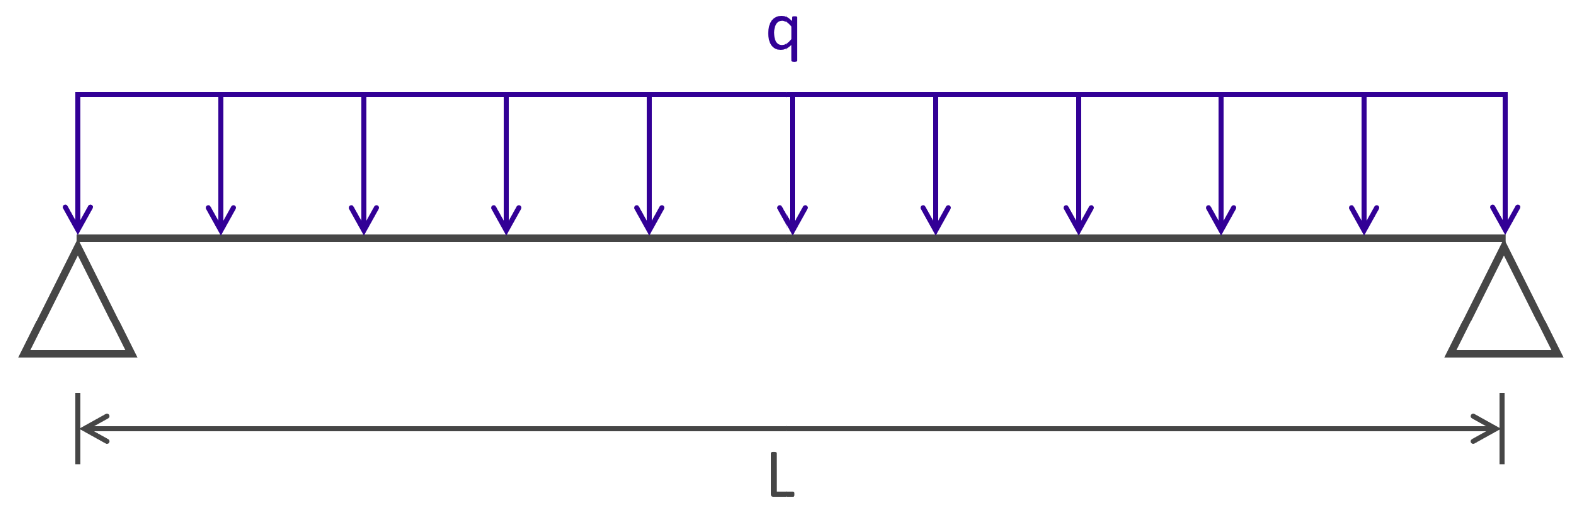 Eurocode 3 - Vérification de la flèche d'une barre bi-articulée sous charge répartie uniforme